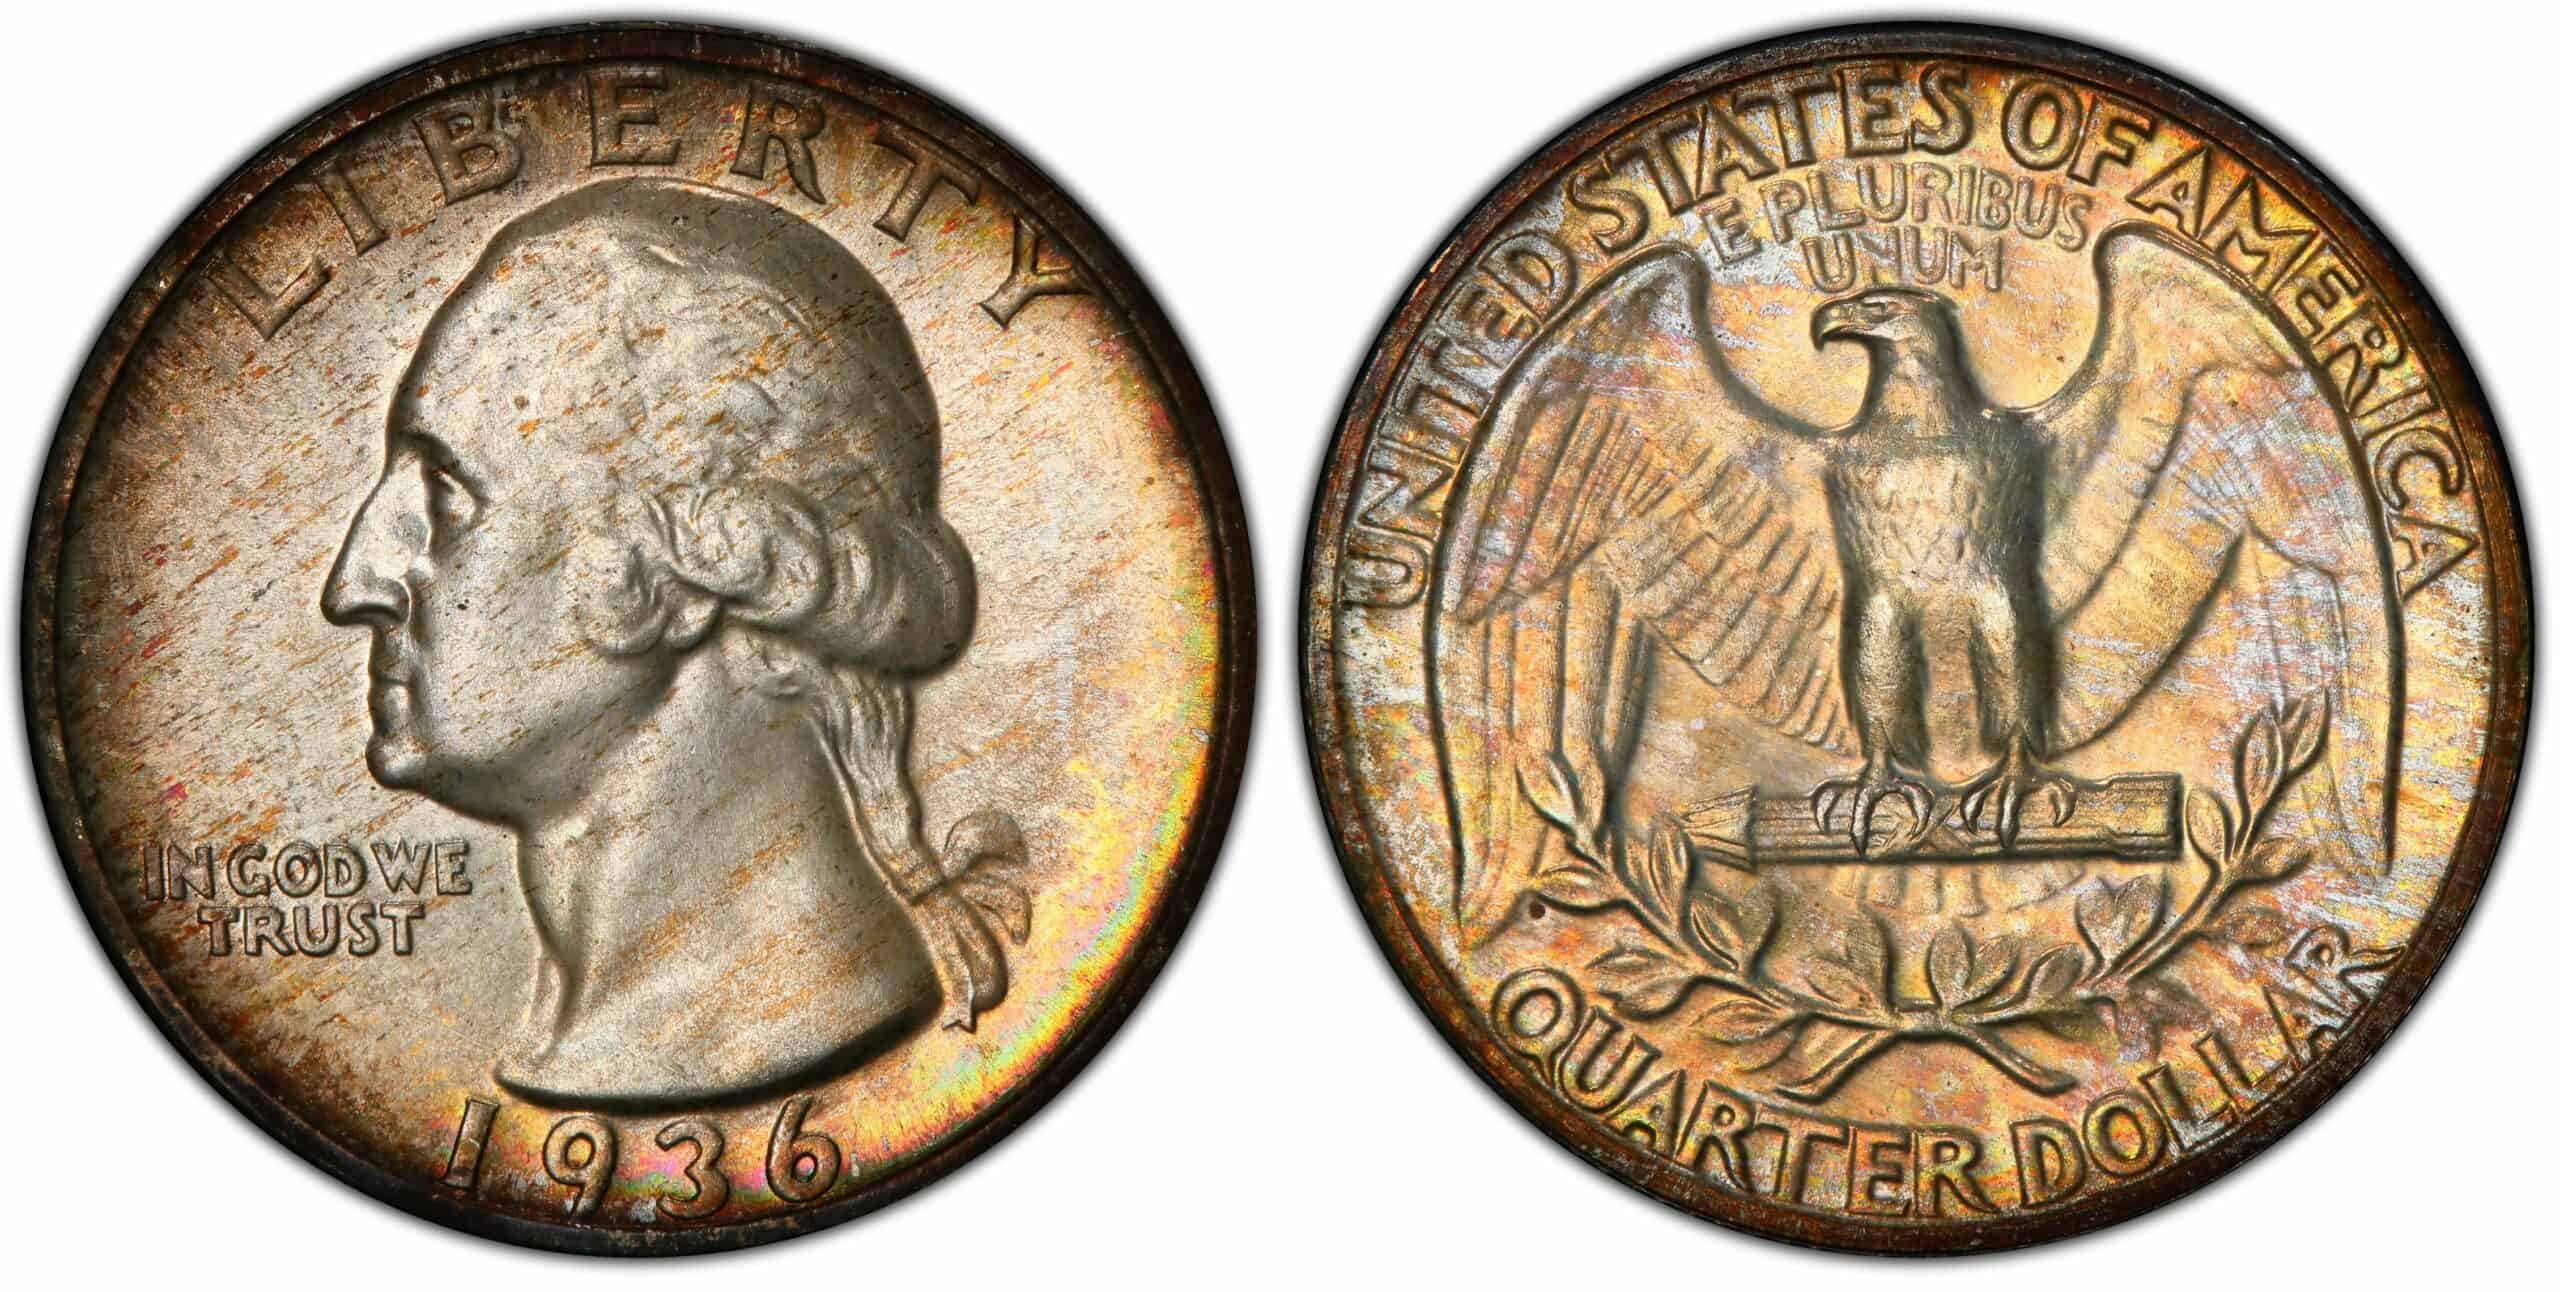 1936 Washington proof quarter Value